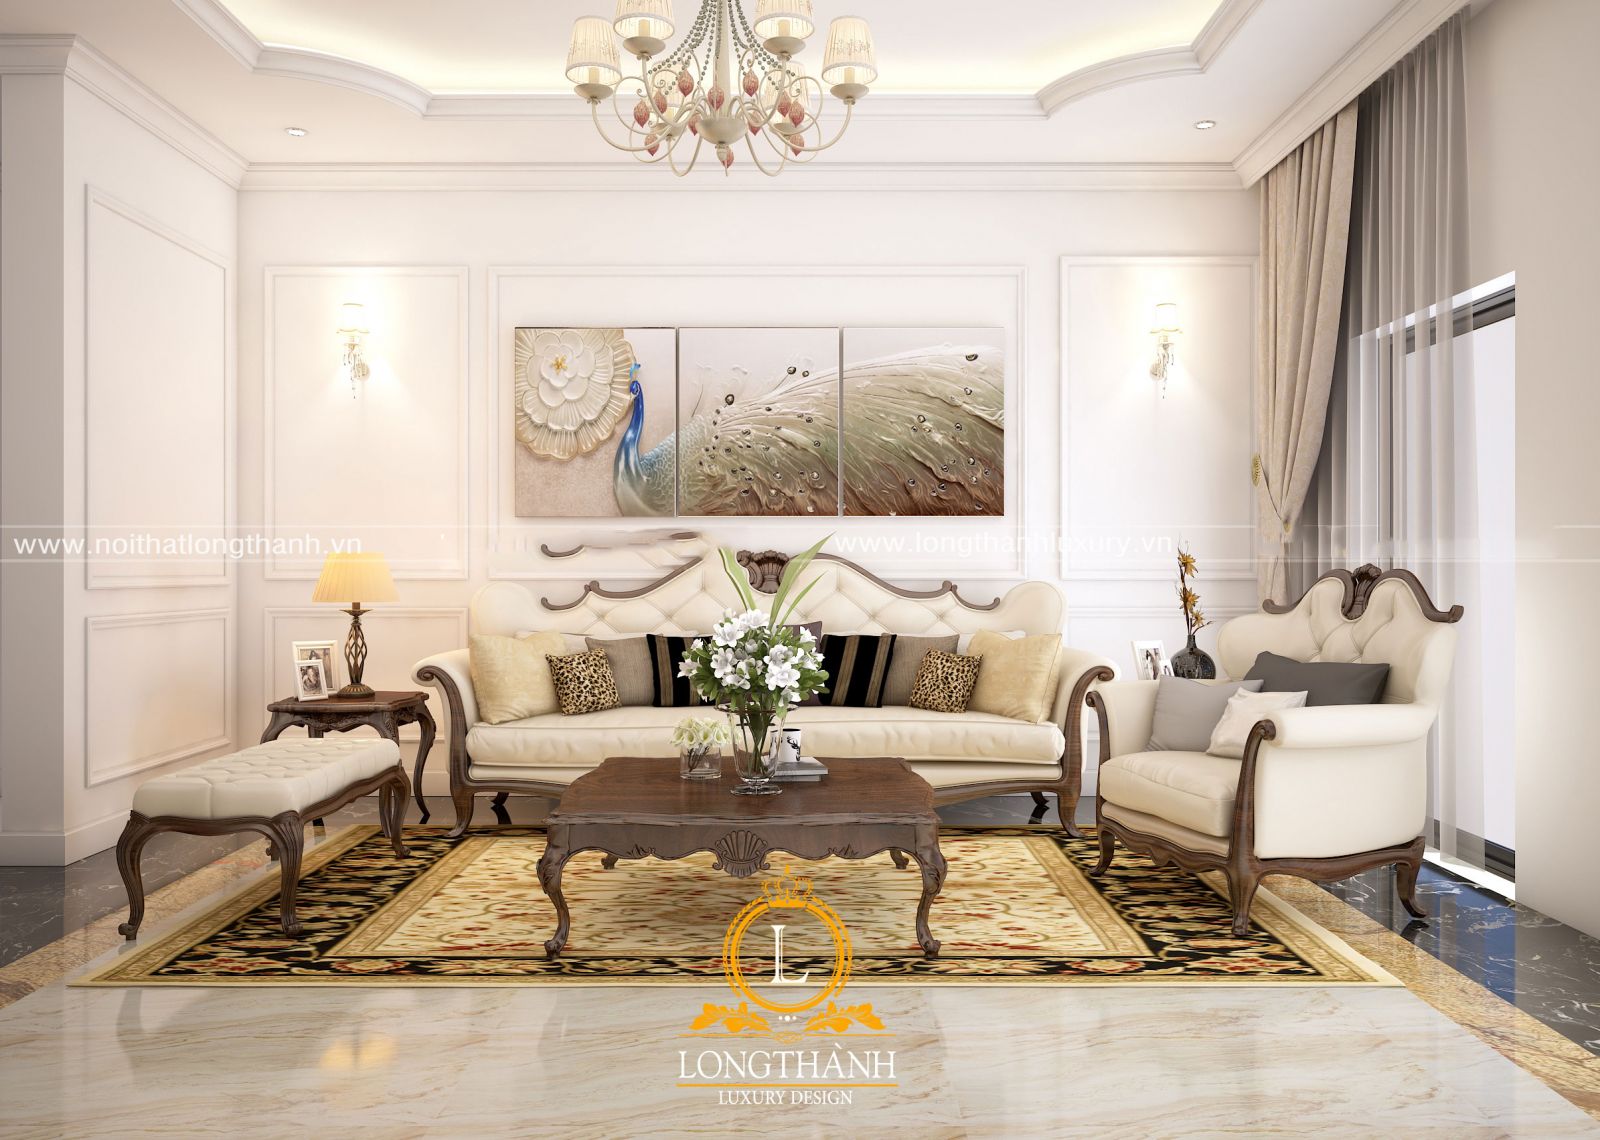 Bộ sofa tân cổ điển nhẹ nhàng được thiết kế phù hợp với không gian chung cư